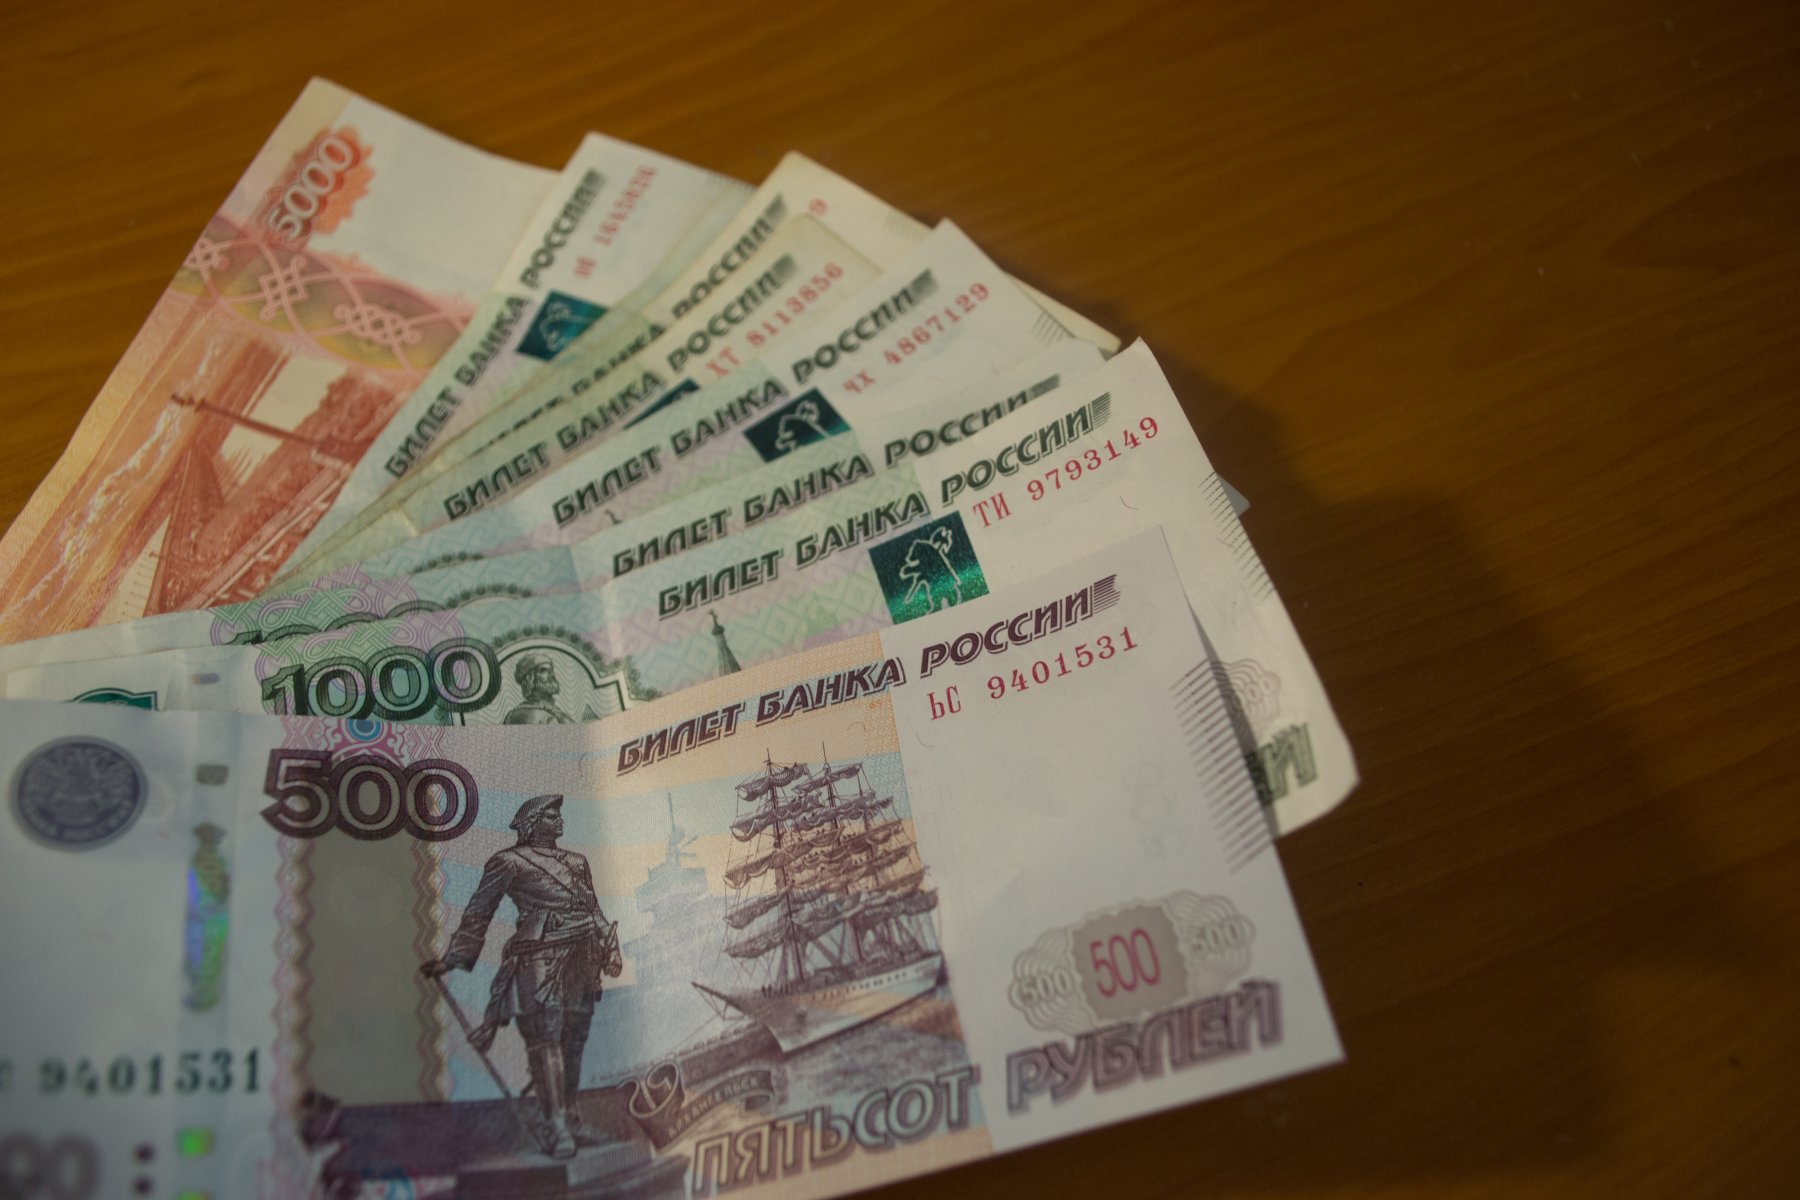 1000 рублей за голосование как получить